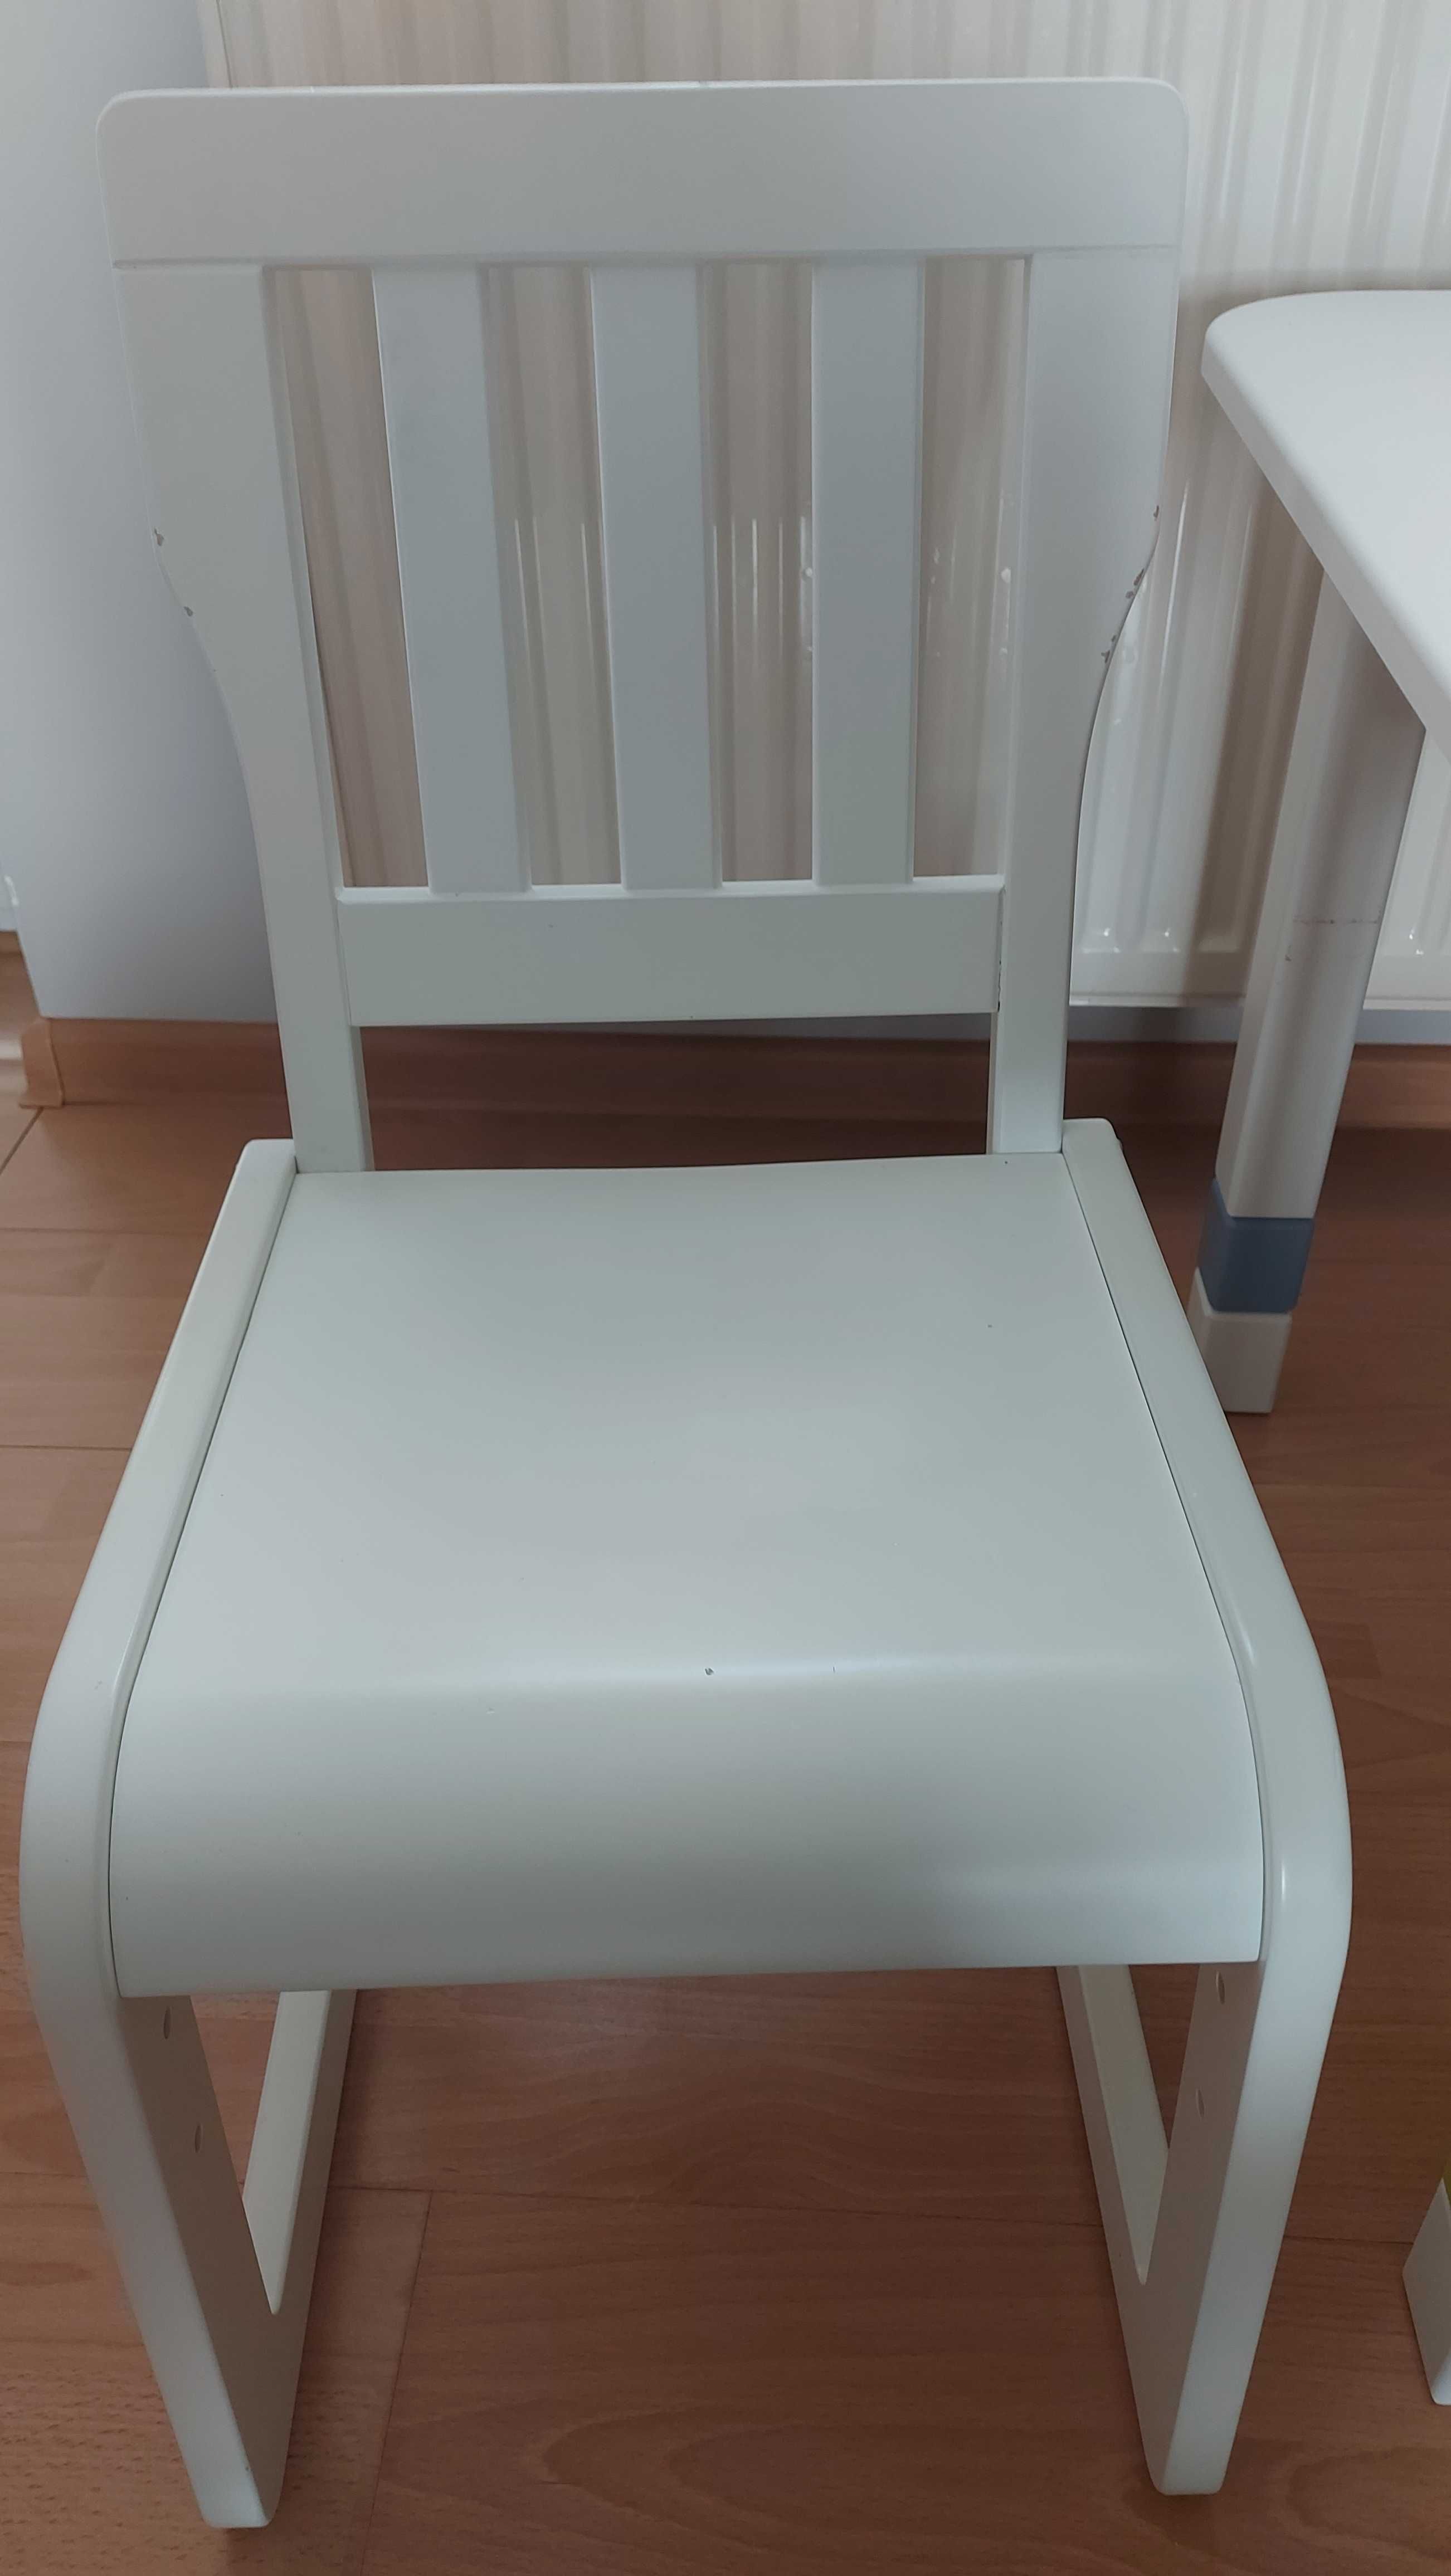 Stolik i krzesło Meblik ( stolik krzesełko dziecięce )